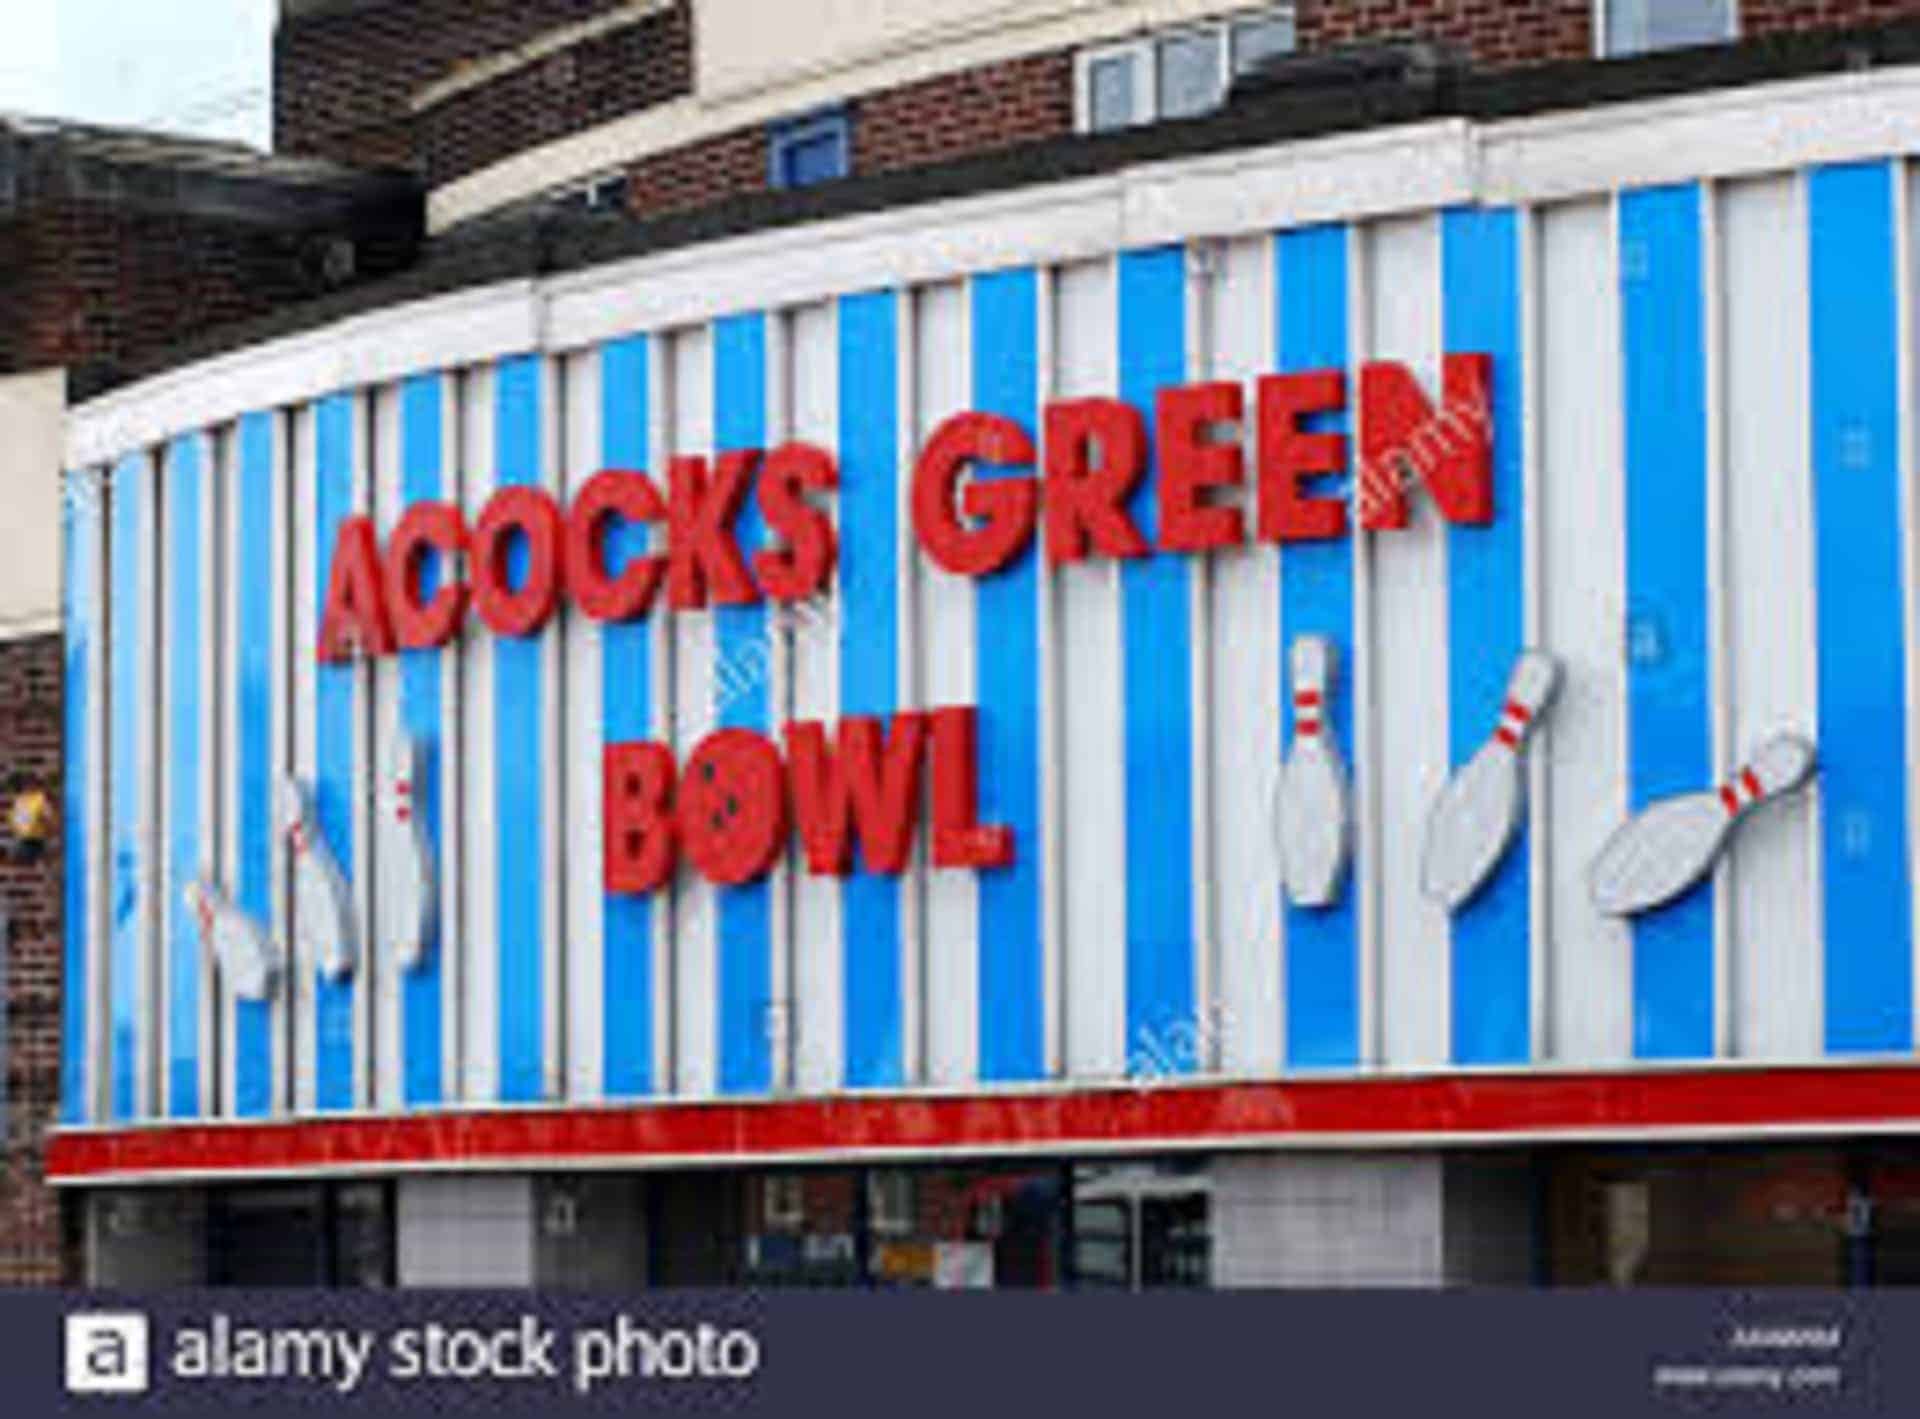 Acocks Green Bowl in UK